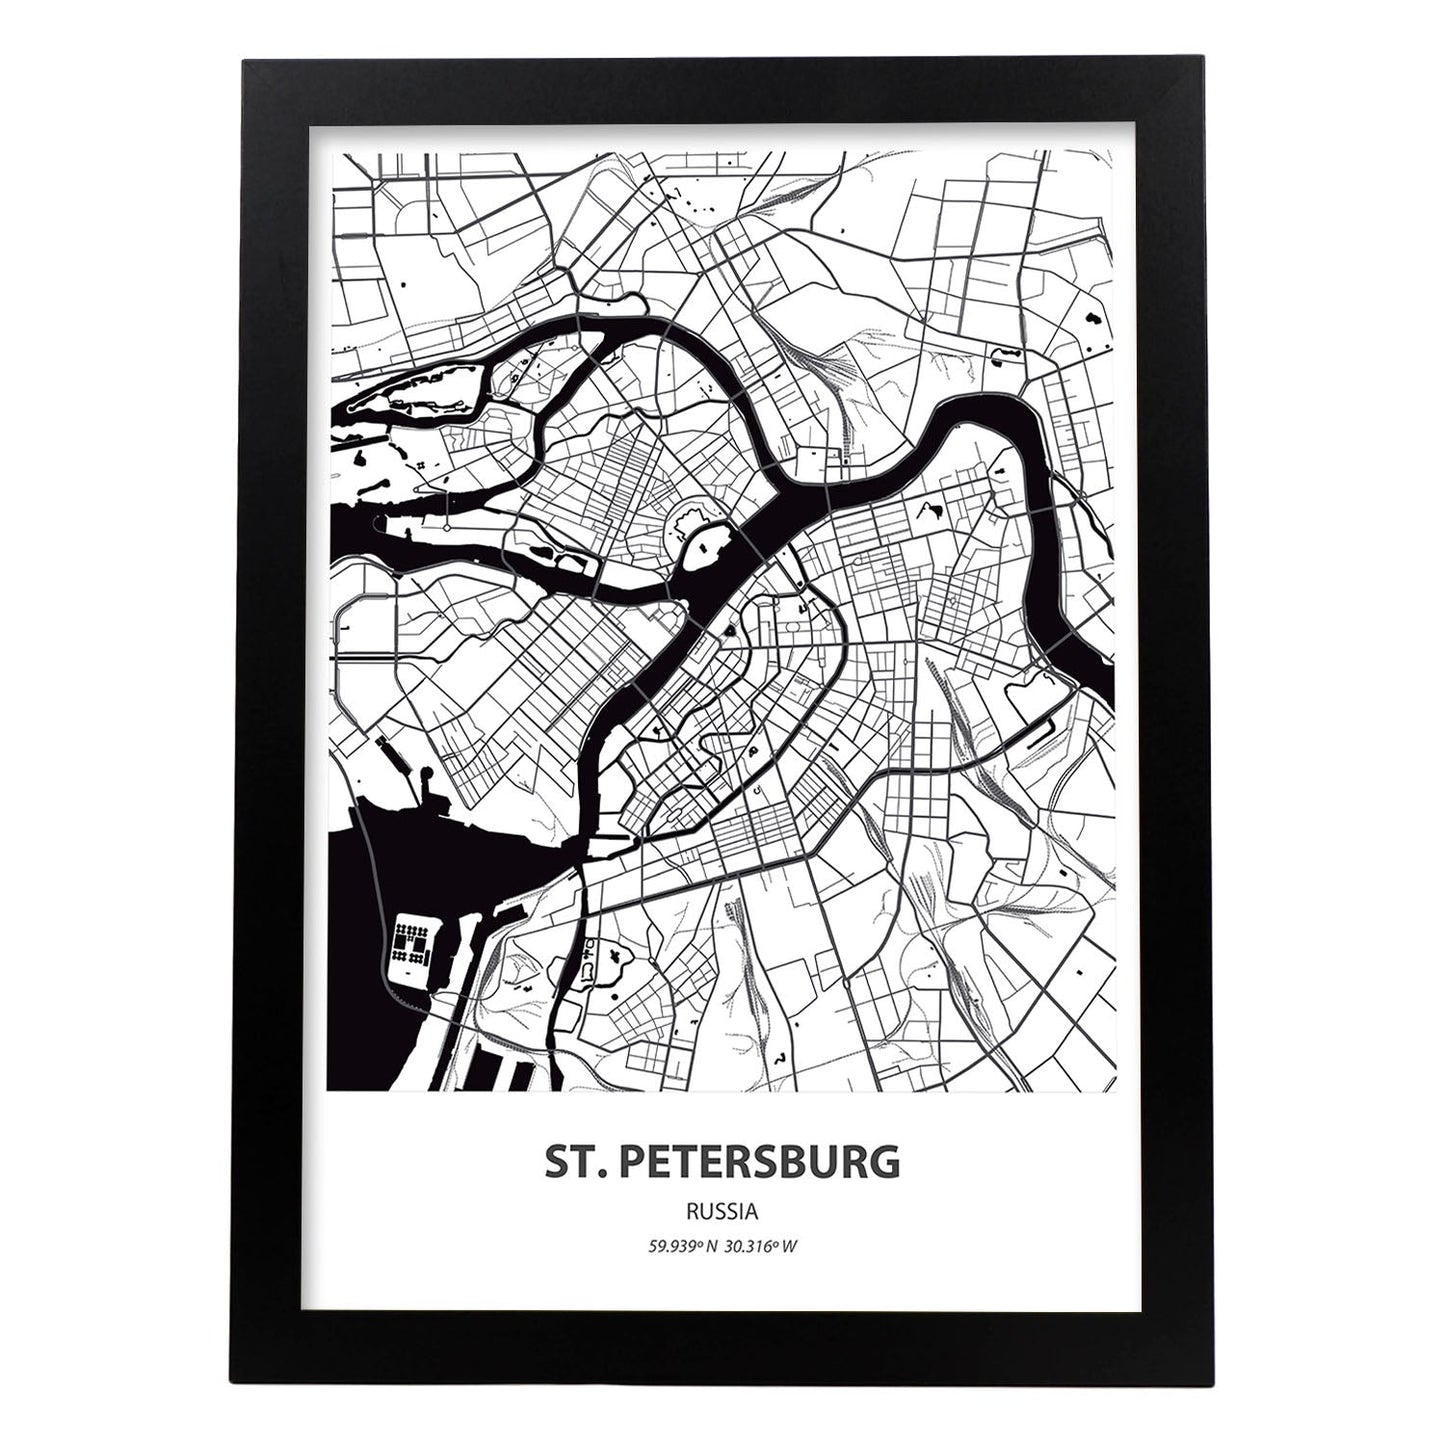 Poster con mapa de St. Petersburg - Rusia. Láminas de ciudades de Asia con mares y ríos en color negro.-Artwork-Nacnic-A4-Marco Negro-Nacnic Estudio SL